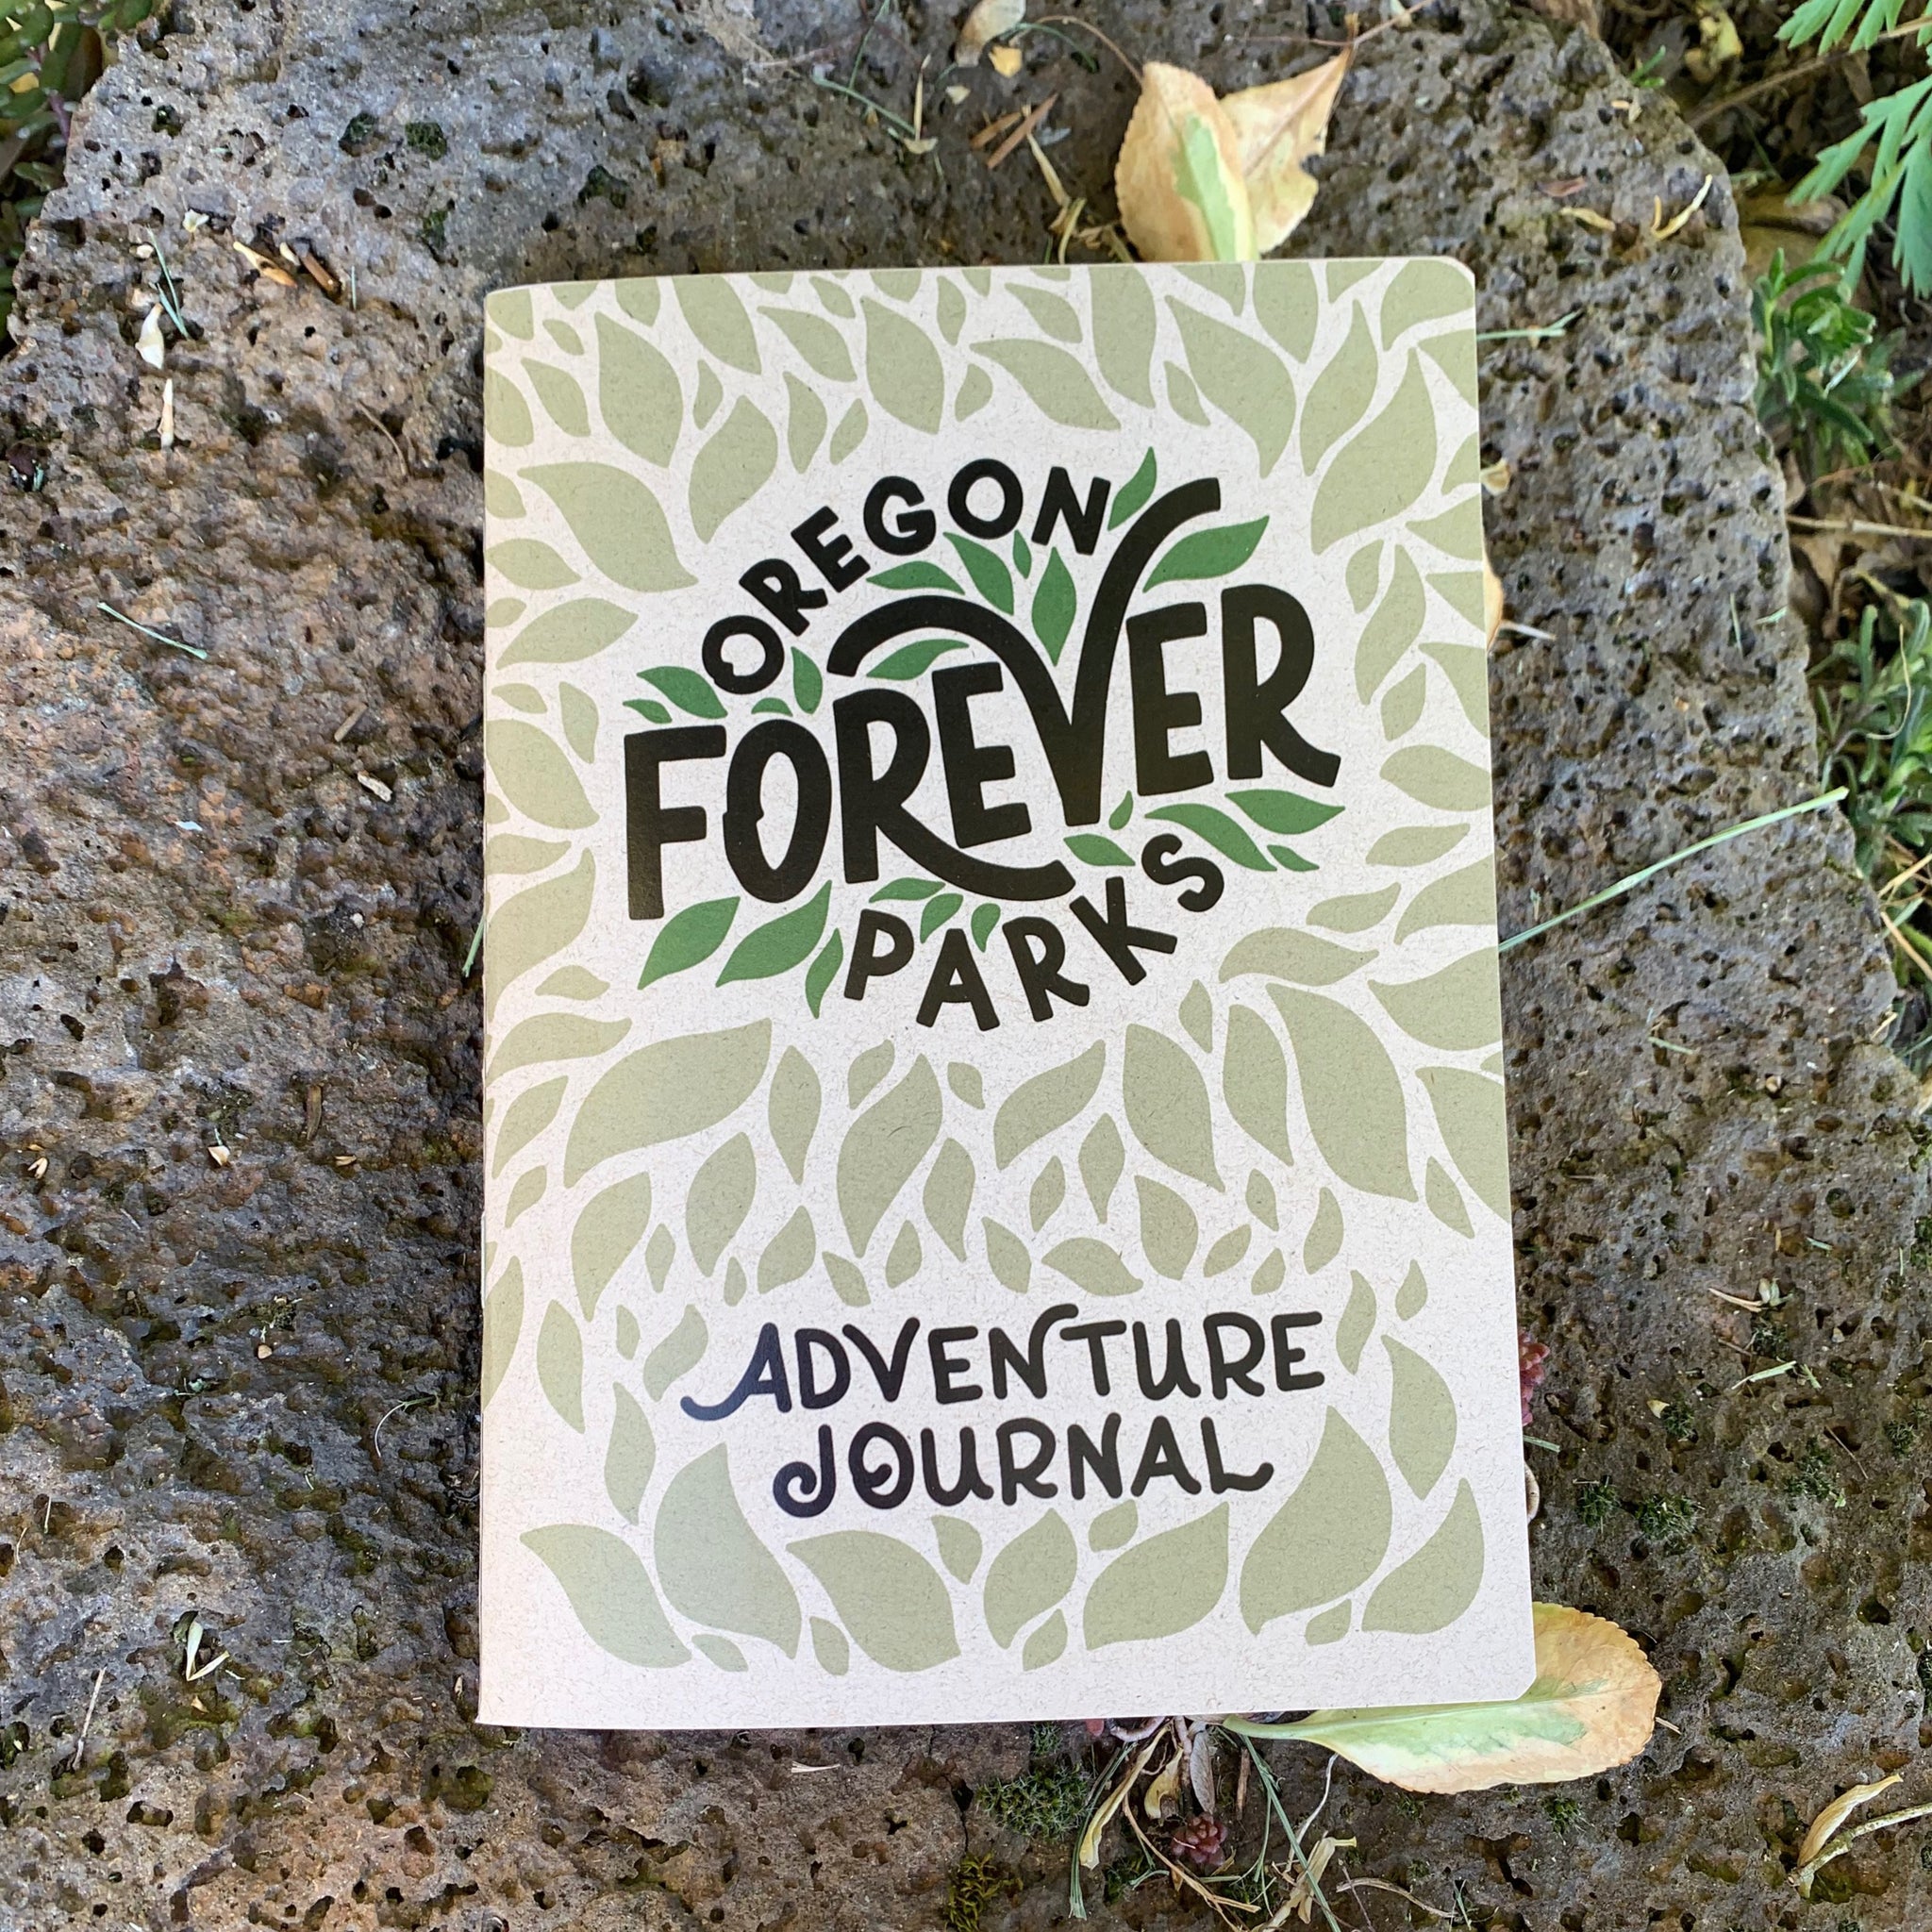 Oregon Parks Adventure Journal – Oregon Parks Forever